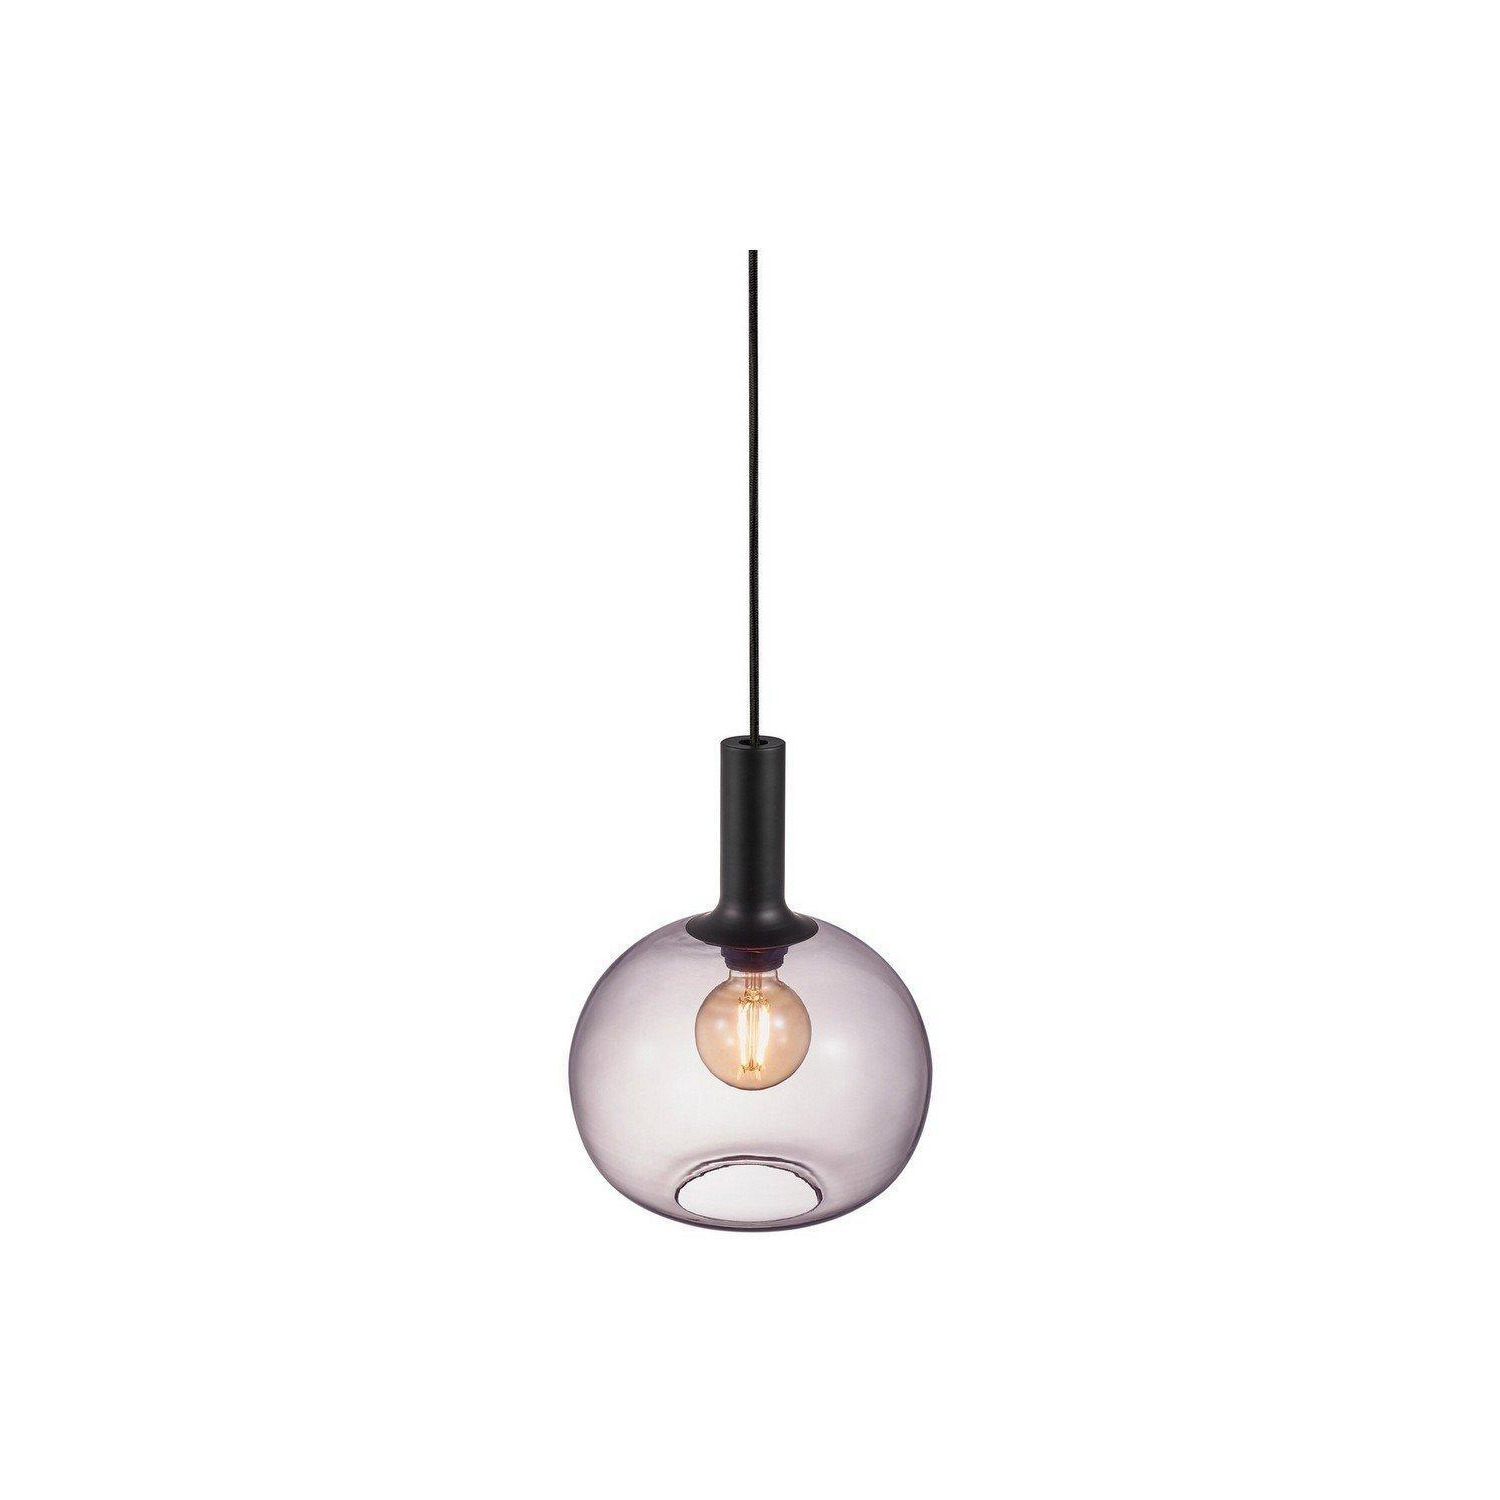 Alton 25cm Globe Pendant Ceiling Light Black E27 - image 1